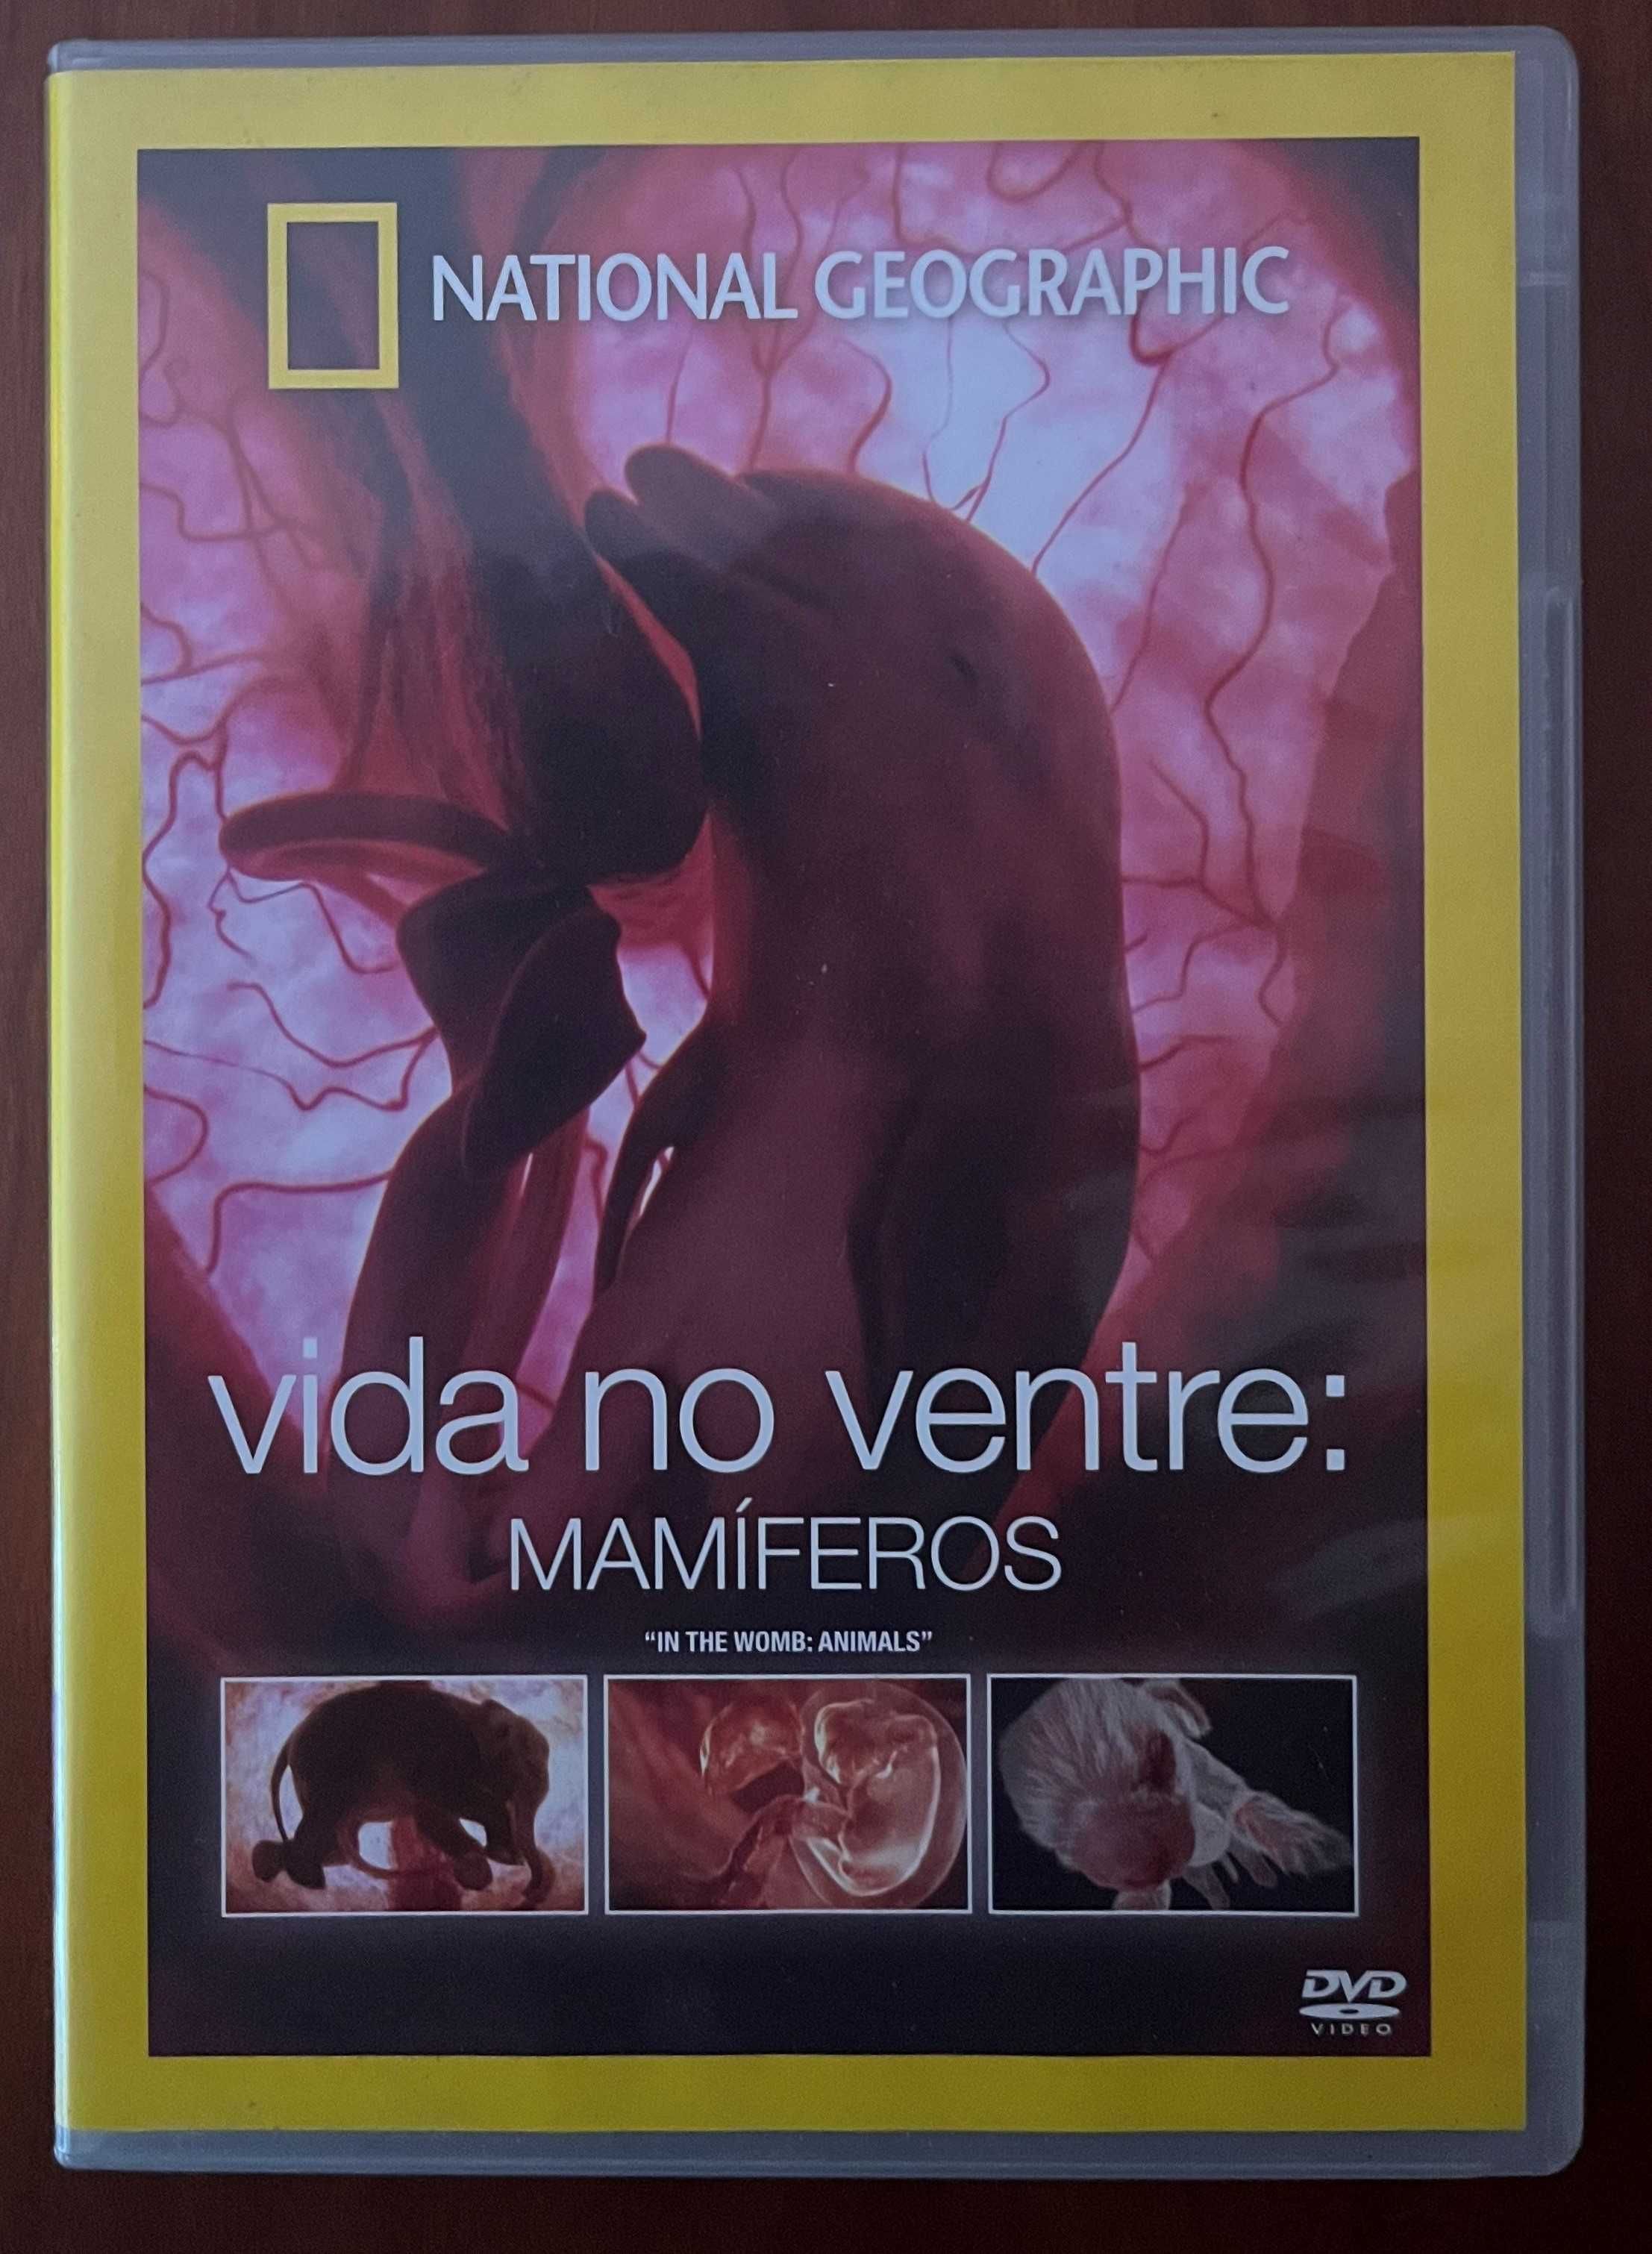 DVD "Vida no ventre: Mamíferos" de National Geographic